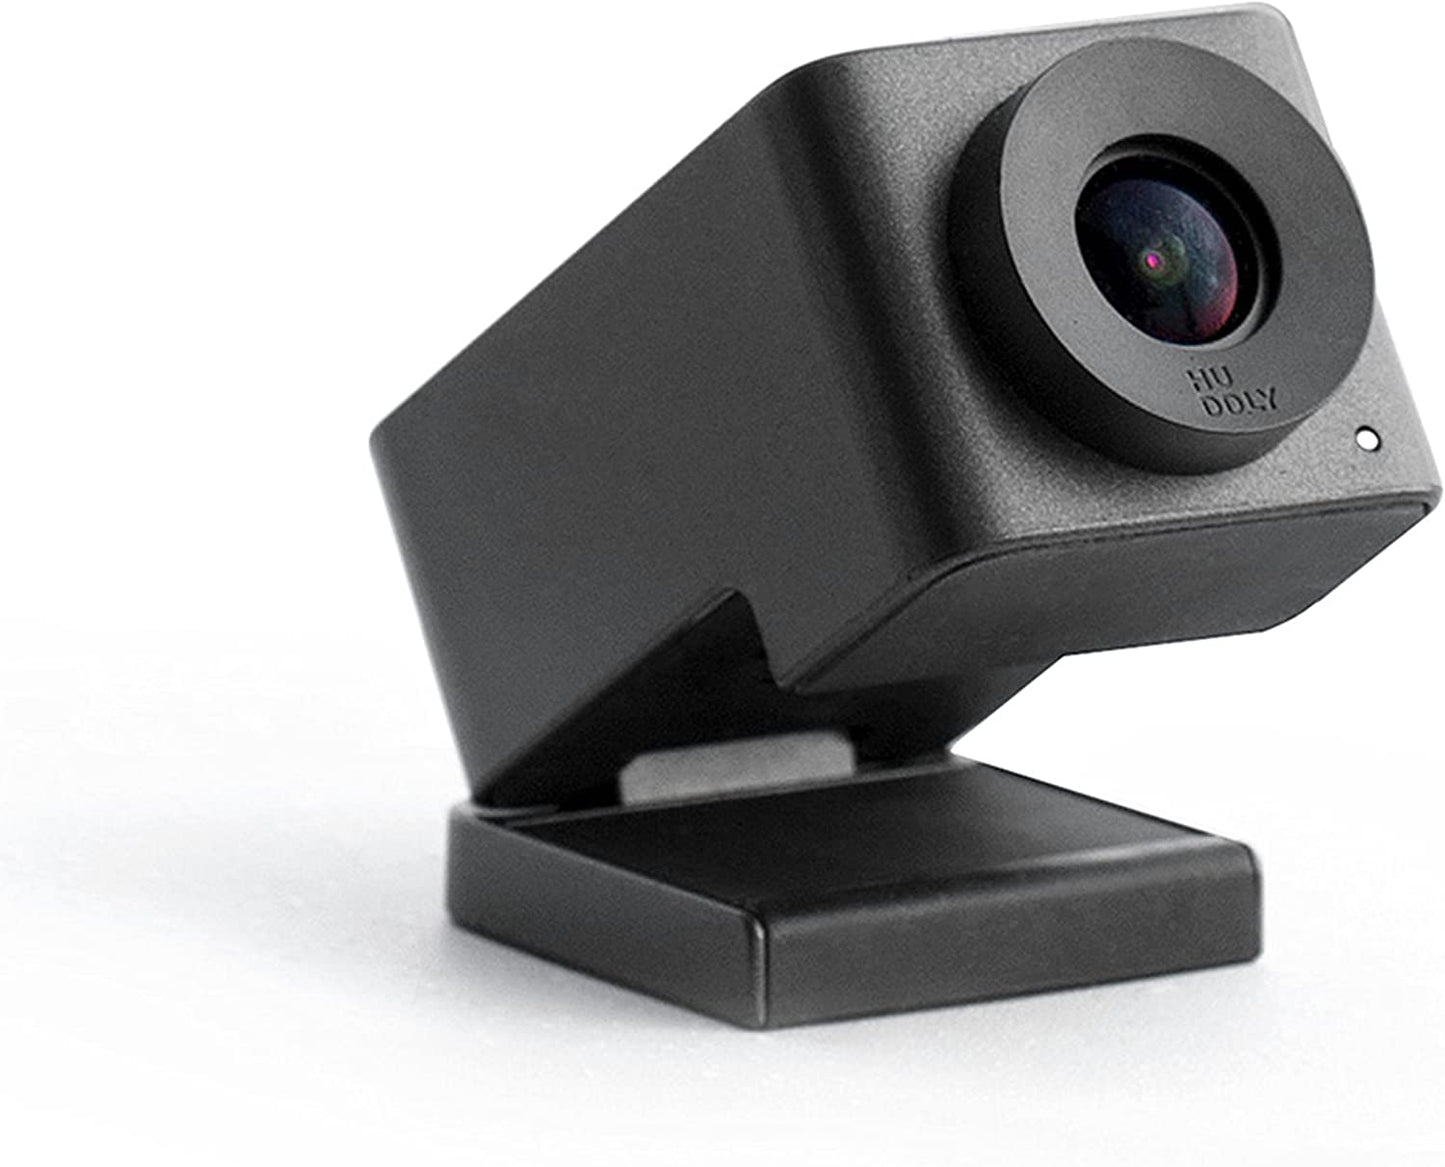 Huddly GO Cámara de videoconferencia – Alta calidad, lente gran angular, USB Plug and Play (incl. Cable de 23.6 in.